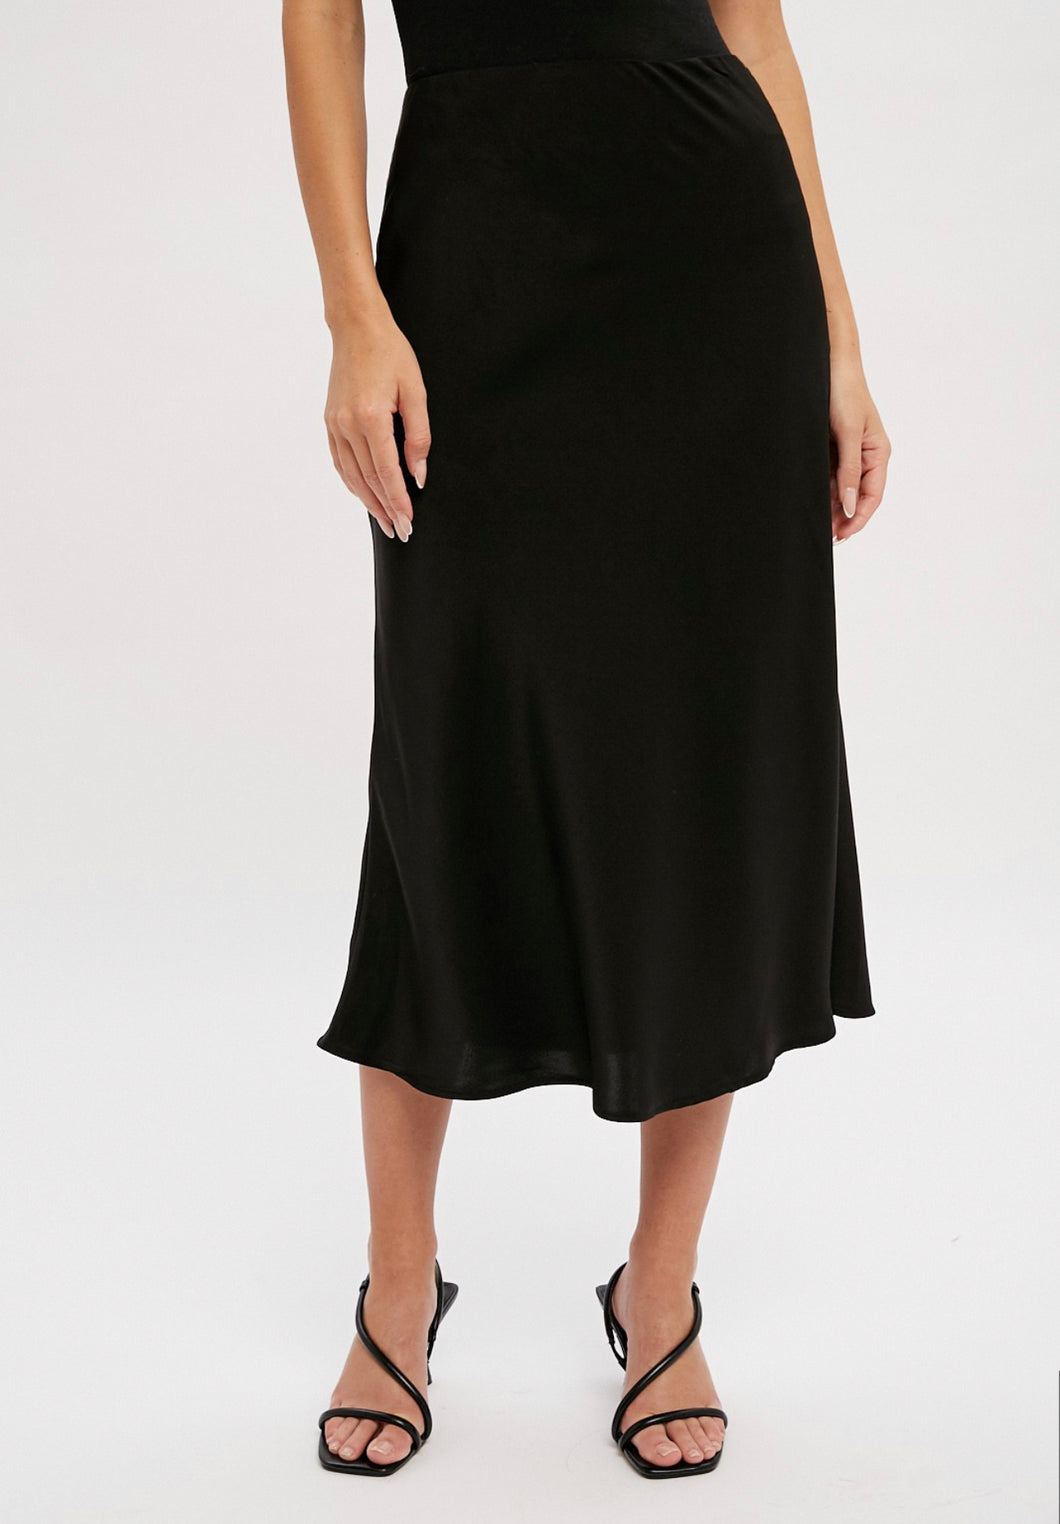 Black Satin Skirt